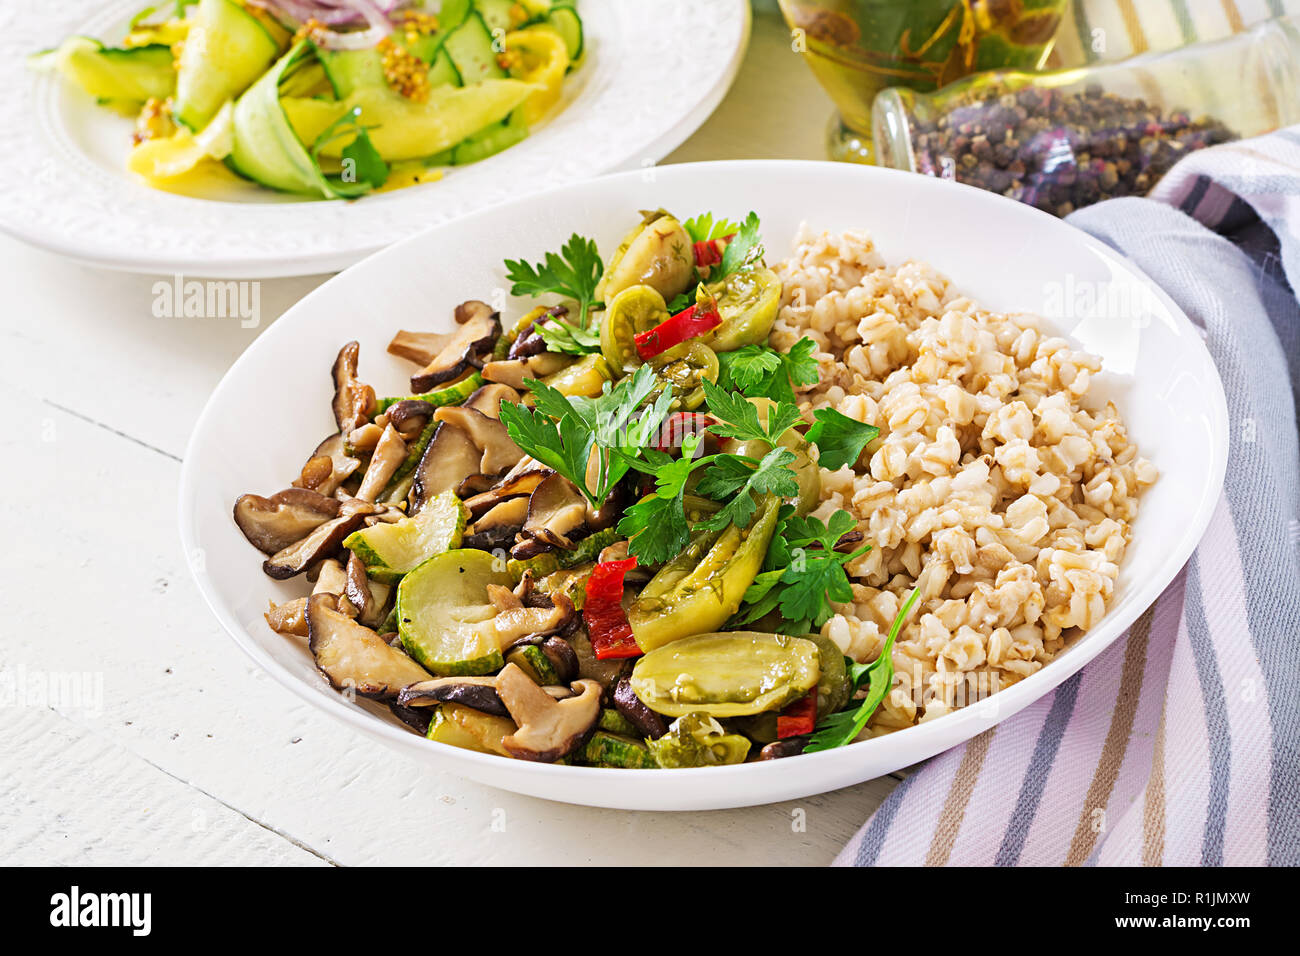 Menu de régime. Repas végétarien sain - les champignons shiitake, courgette et le porridge d'avoine sur la cuvette. La nourriture végétalienne. Banque D'Images